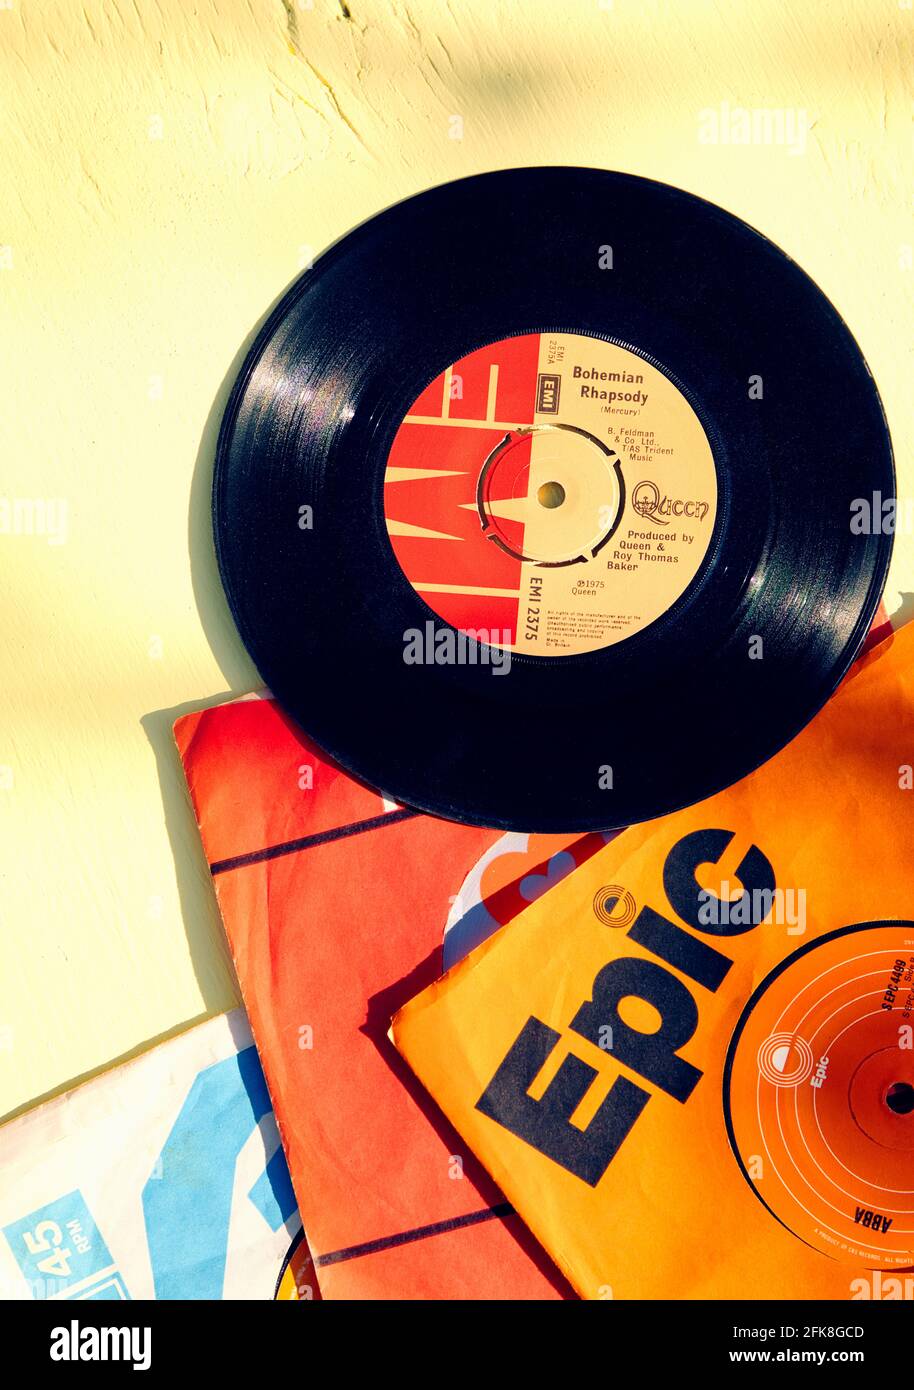 Bohemian Rhapsody von Queen 7 Zoll 45 U/min Single Vinyl Platte und  Plattenhüllen auf gelbem Hintergrund. Konzept der Erinnerungen, Nostalgie,  gestern Stockfotografie - Alamy